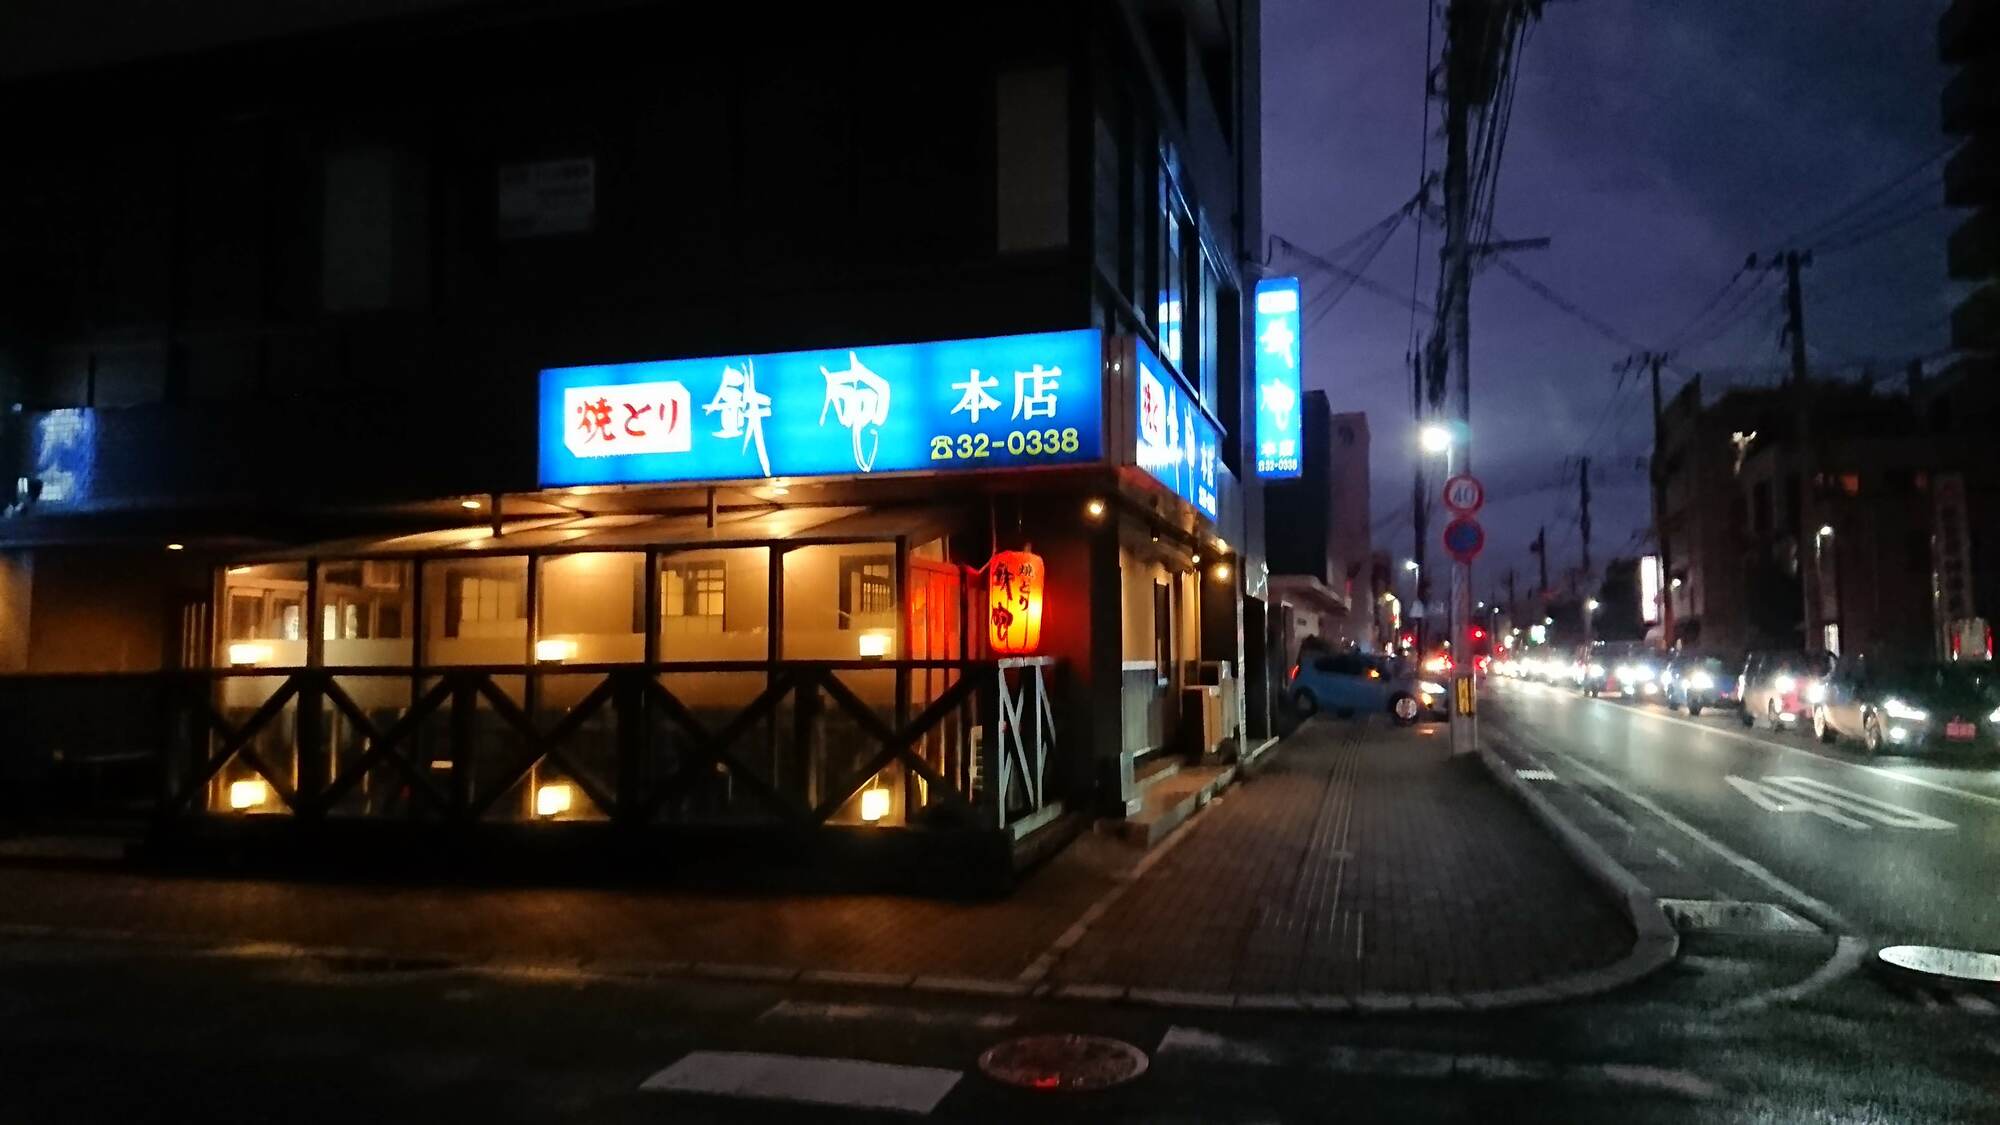 日本一 焼き鳥の街 久留米で焼き鳥を食べよう おすすめの店3選 九州の観光情報はfeel Kyushu